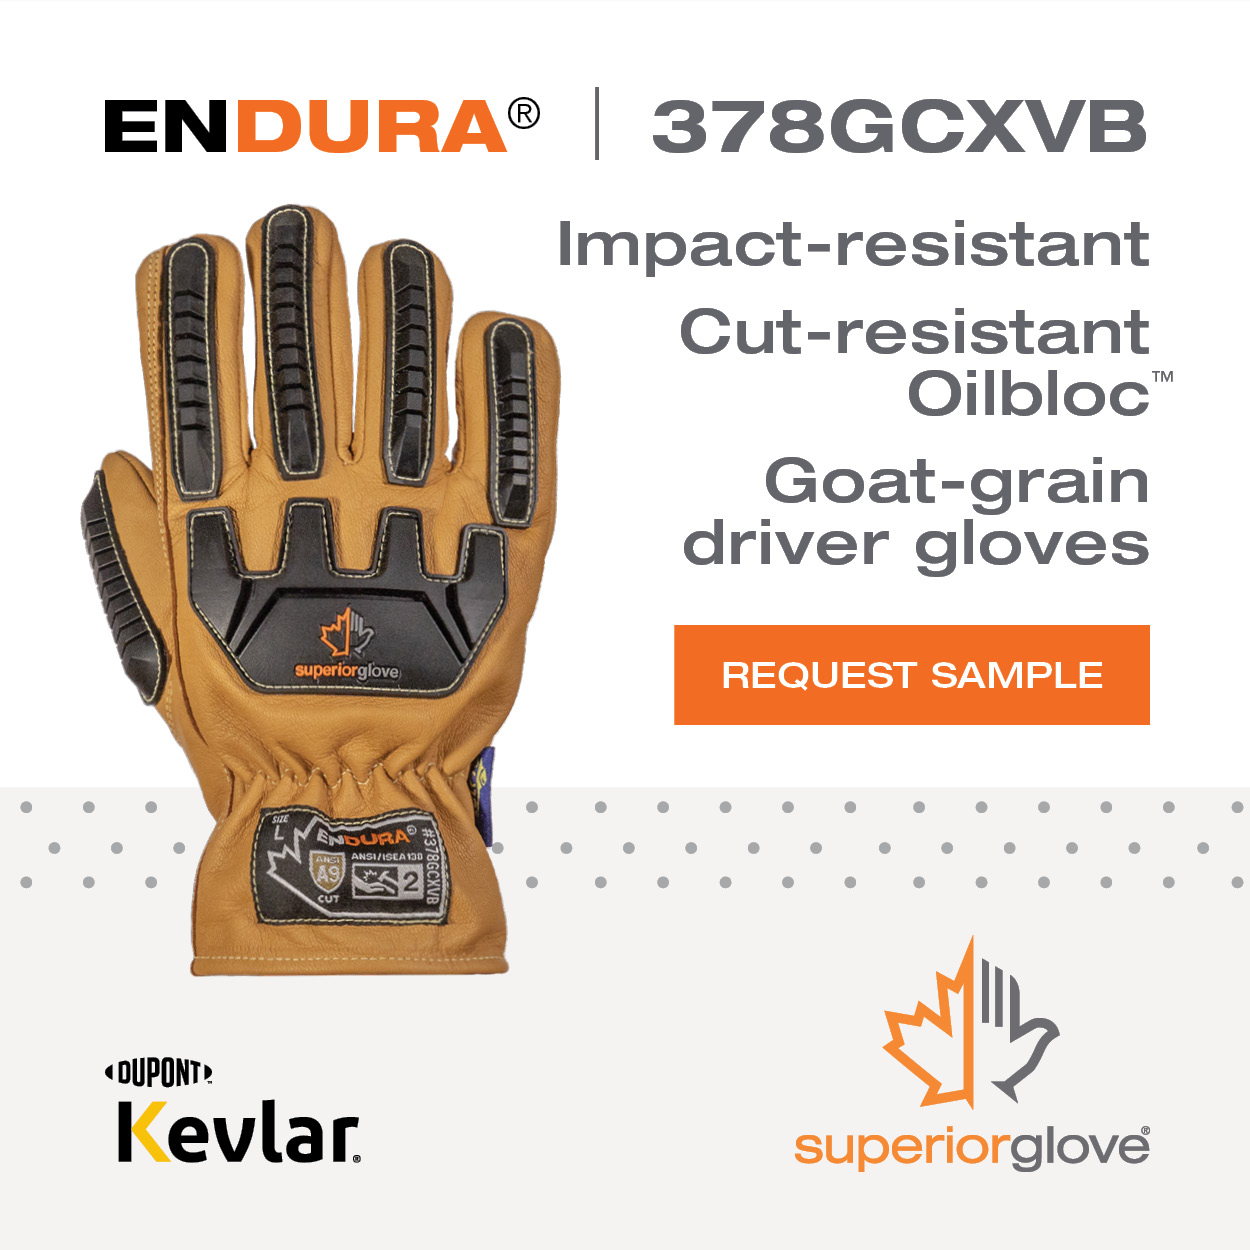 Superior Glove